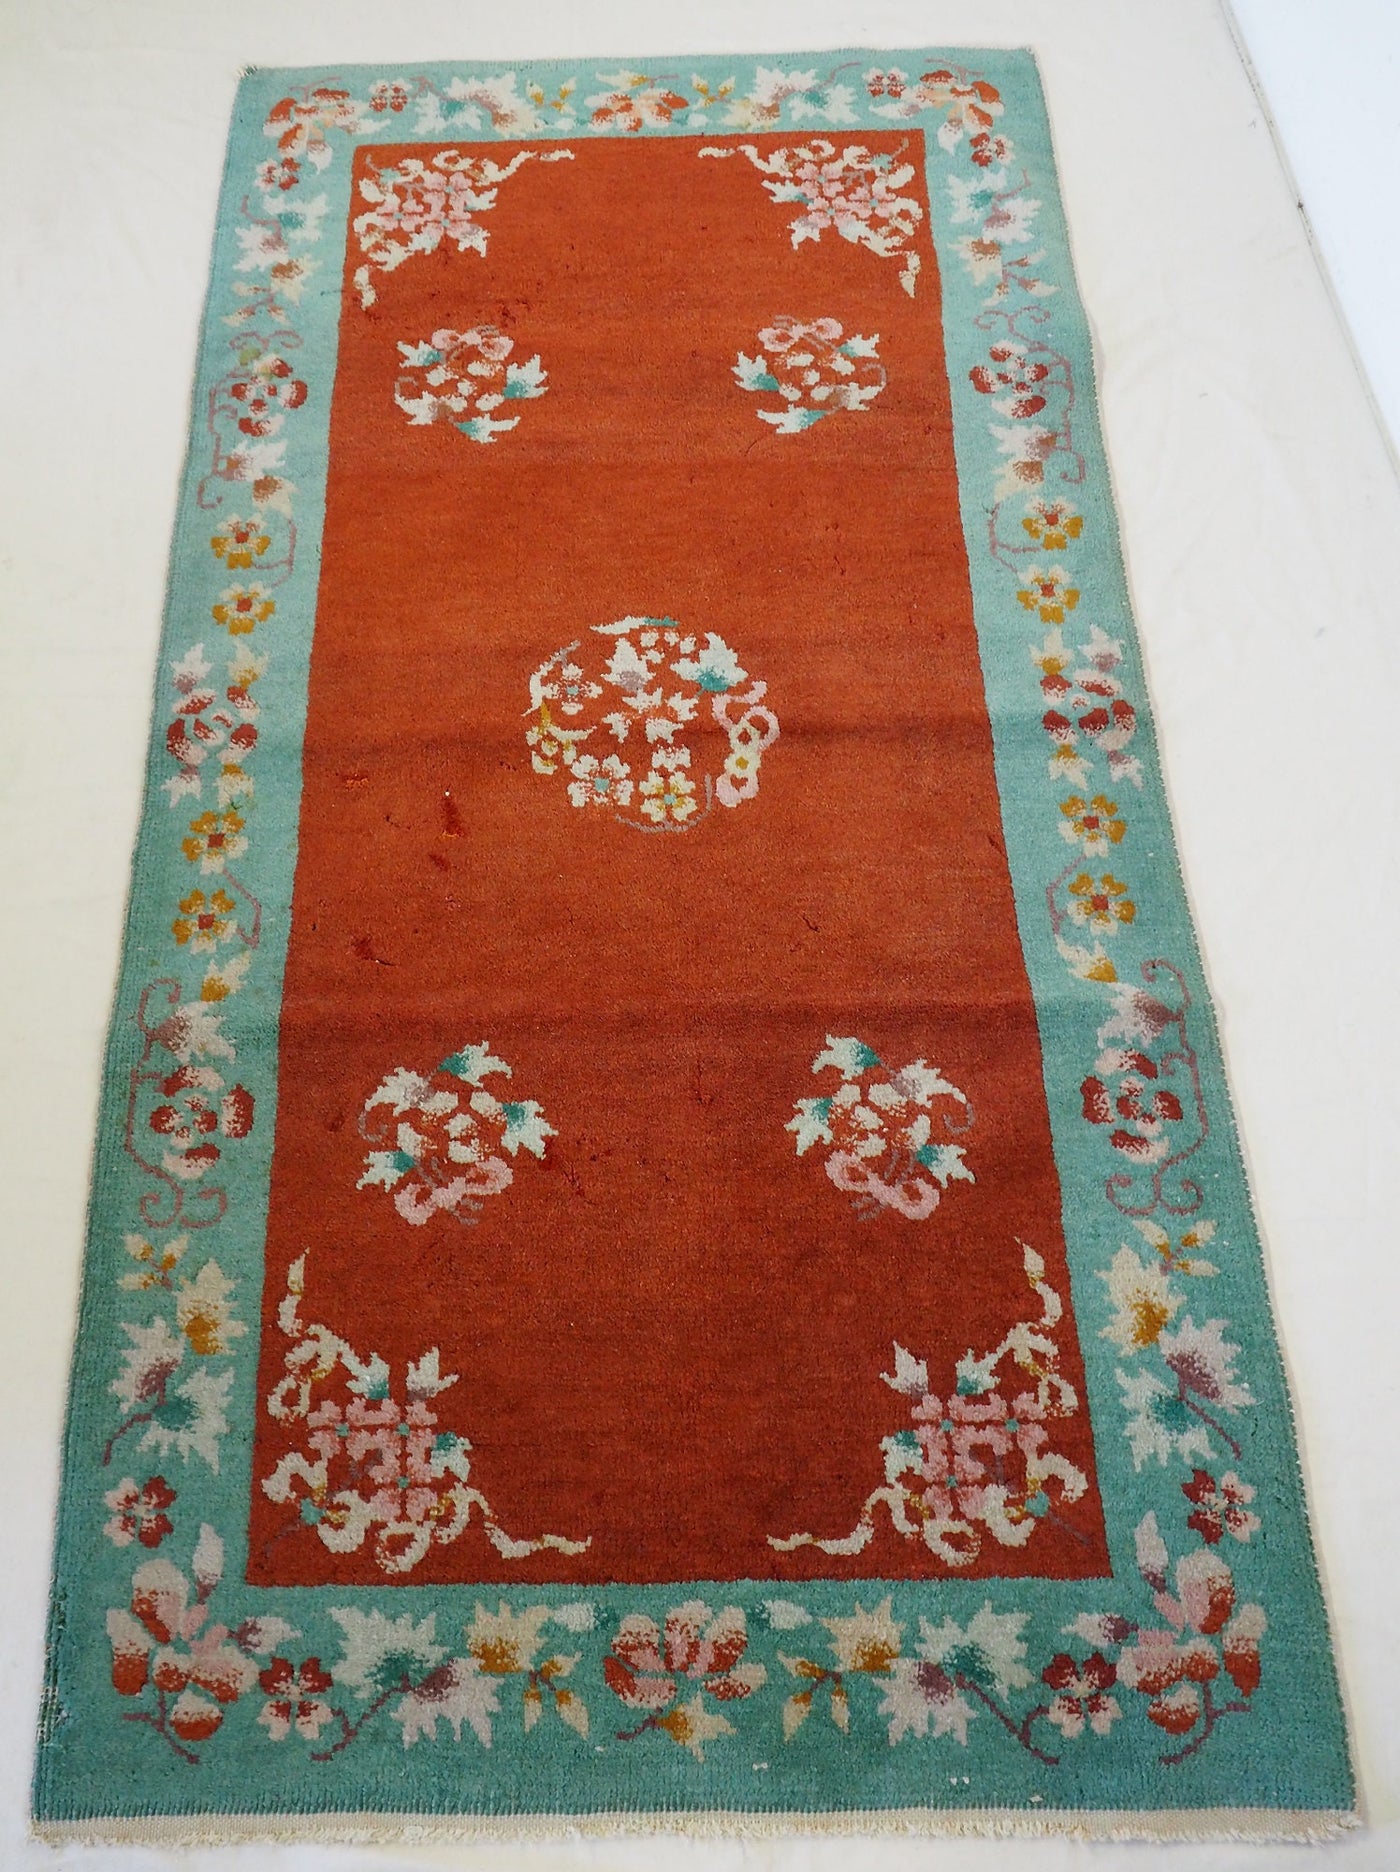 151x78 cm Antik chinesische orient Teppich Brücke antique chinese rug carpet N-6  Orientsbazar   